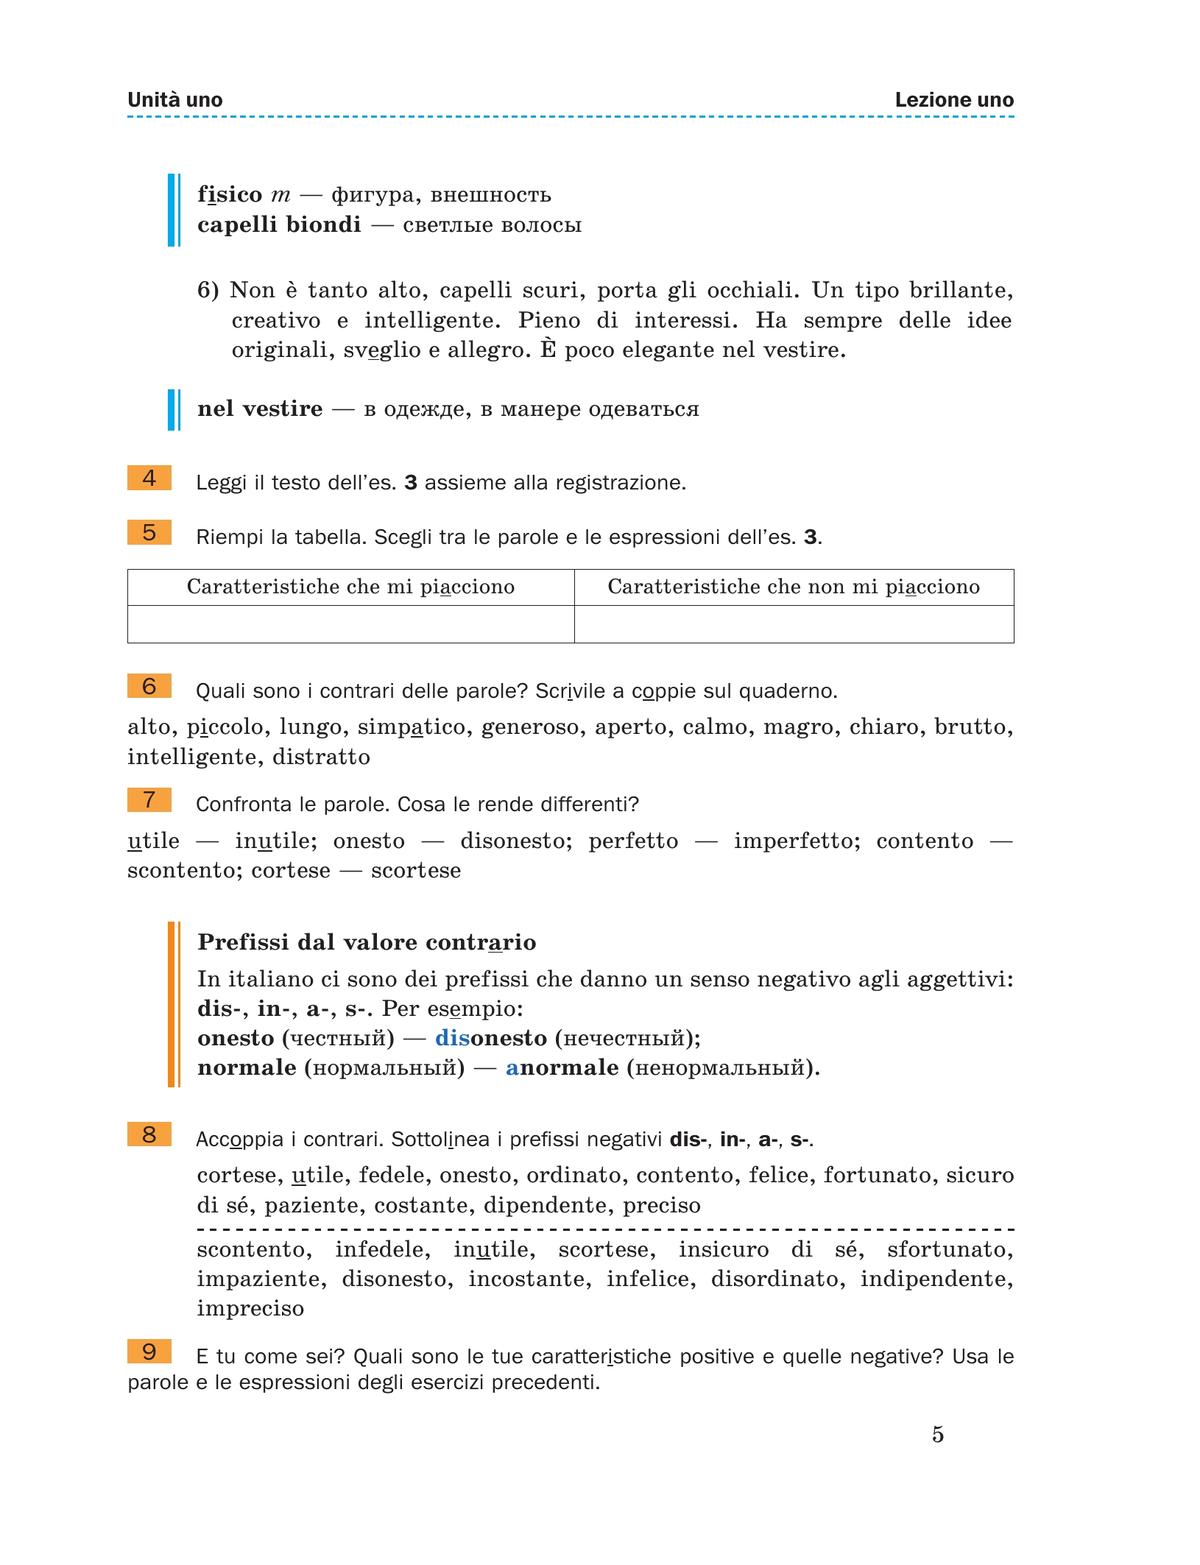 Итальянский язык. 9 класс. Учебник 9